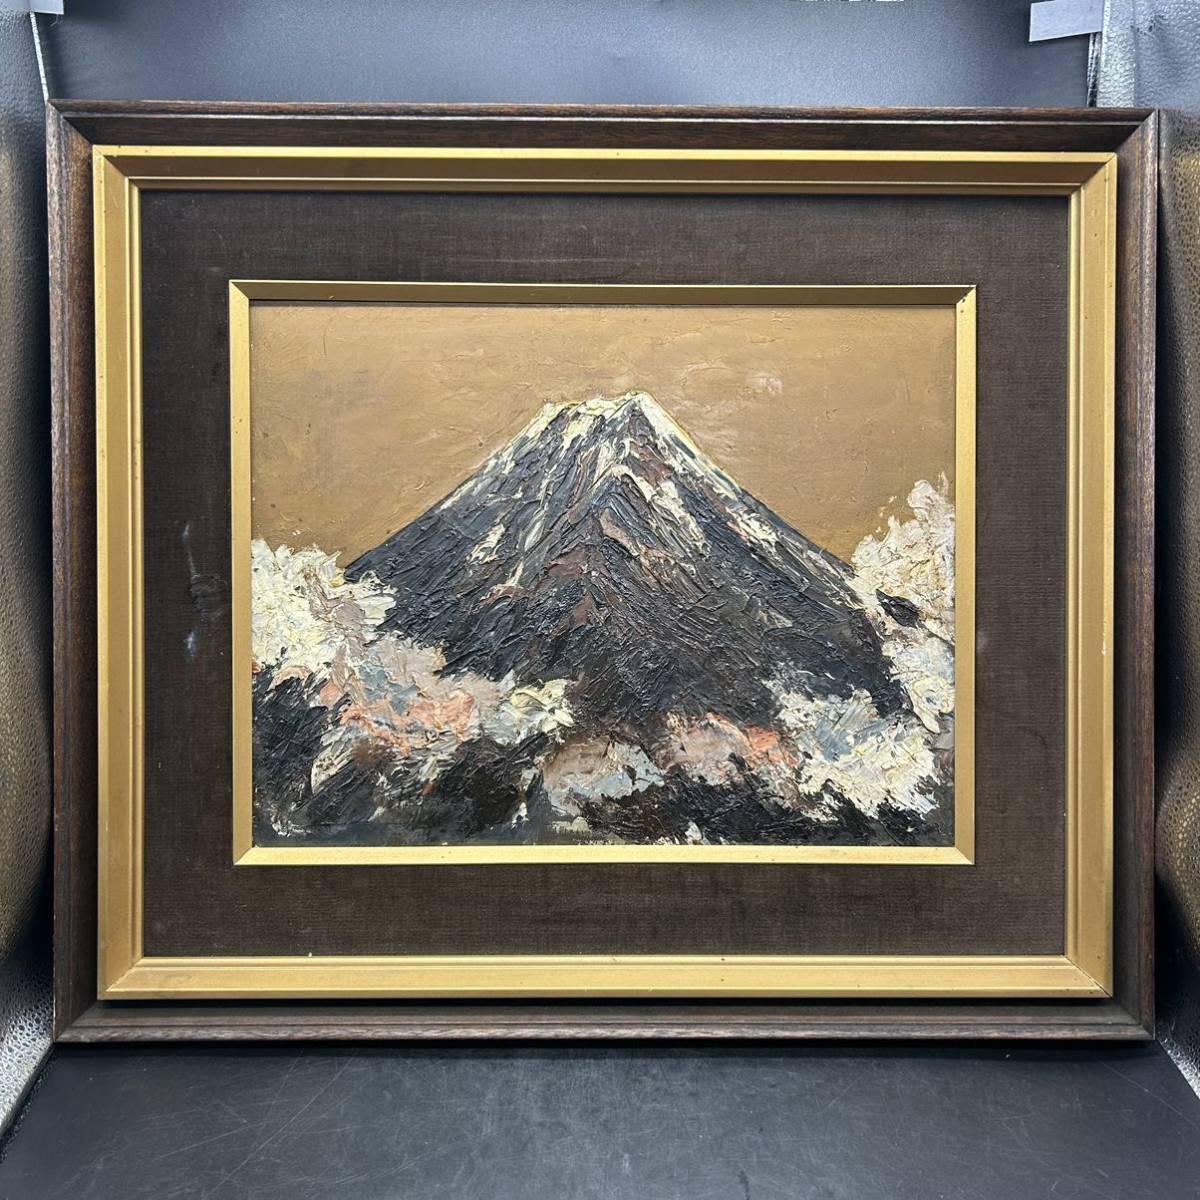 Peinture à l’huile Shigeo Yamada Peinture japonaise Mont. Fuji 1966 Nature morte encadrée Peinture authentique 573, peinture, peinture à l'huile, Nature, Peinture de paysage